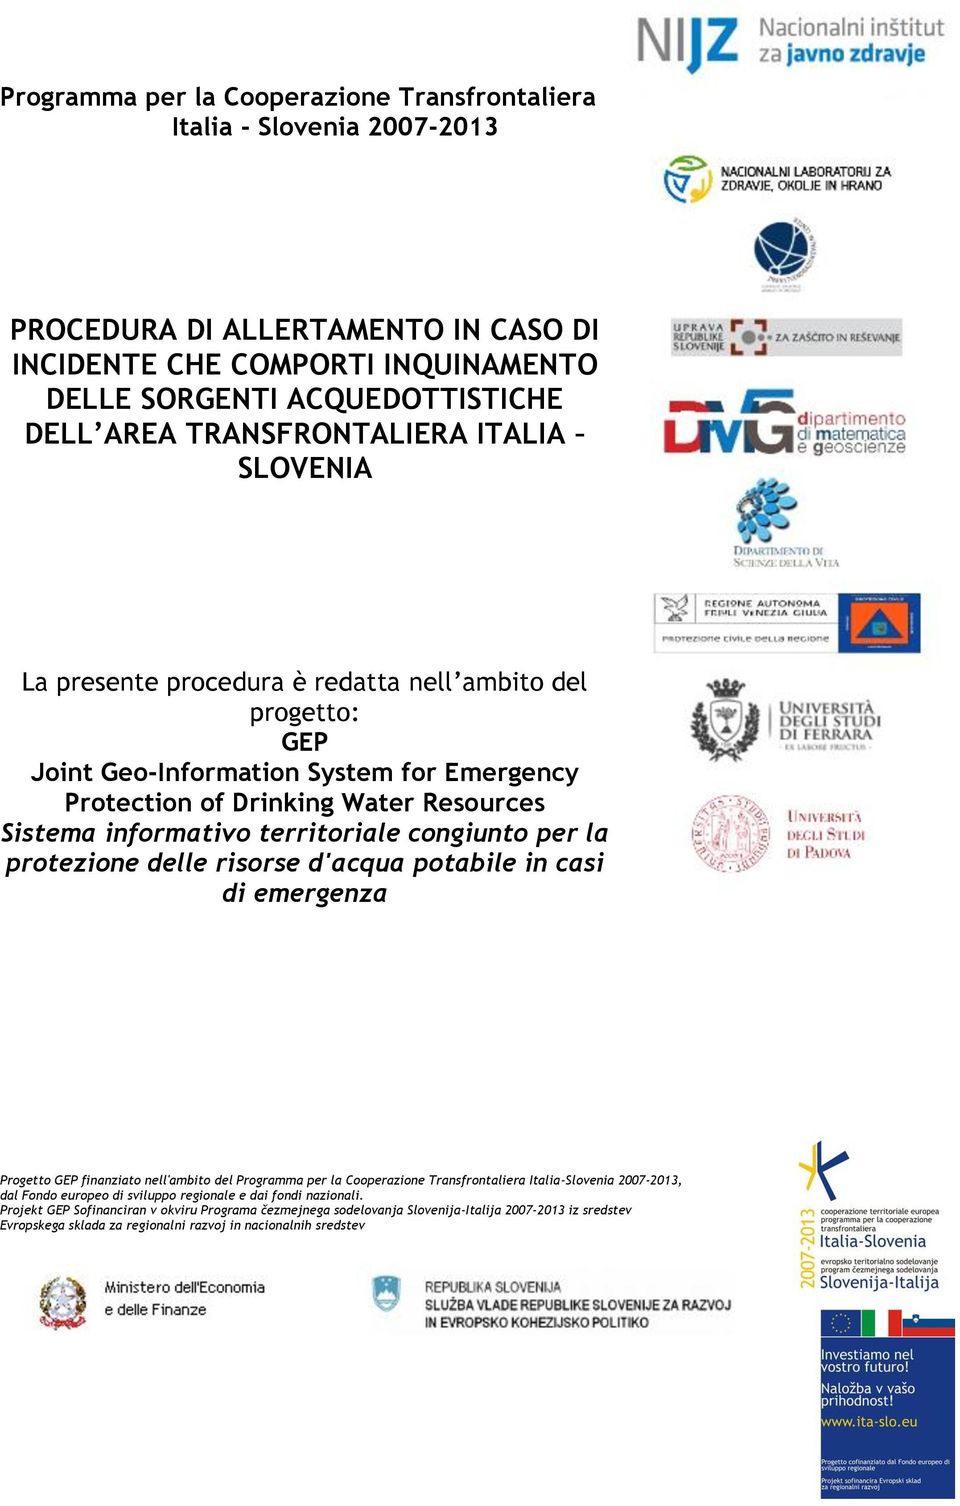 territoriale congiunto per la protezione delle risorse d'acqua potabile in casi di emergenza Progetto GEP finanziato nell'ambito del Programma per la Cooperazione Transfrontaliera Italia-Slovenia